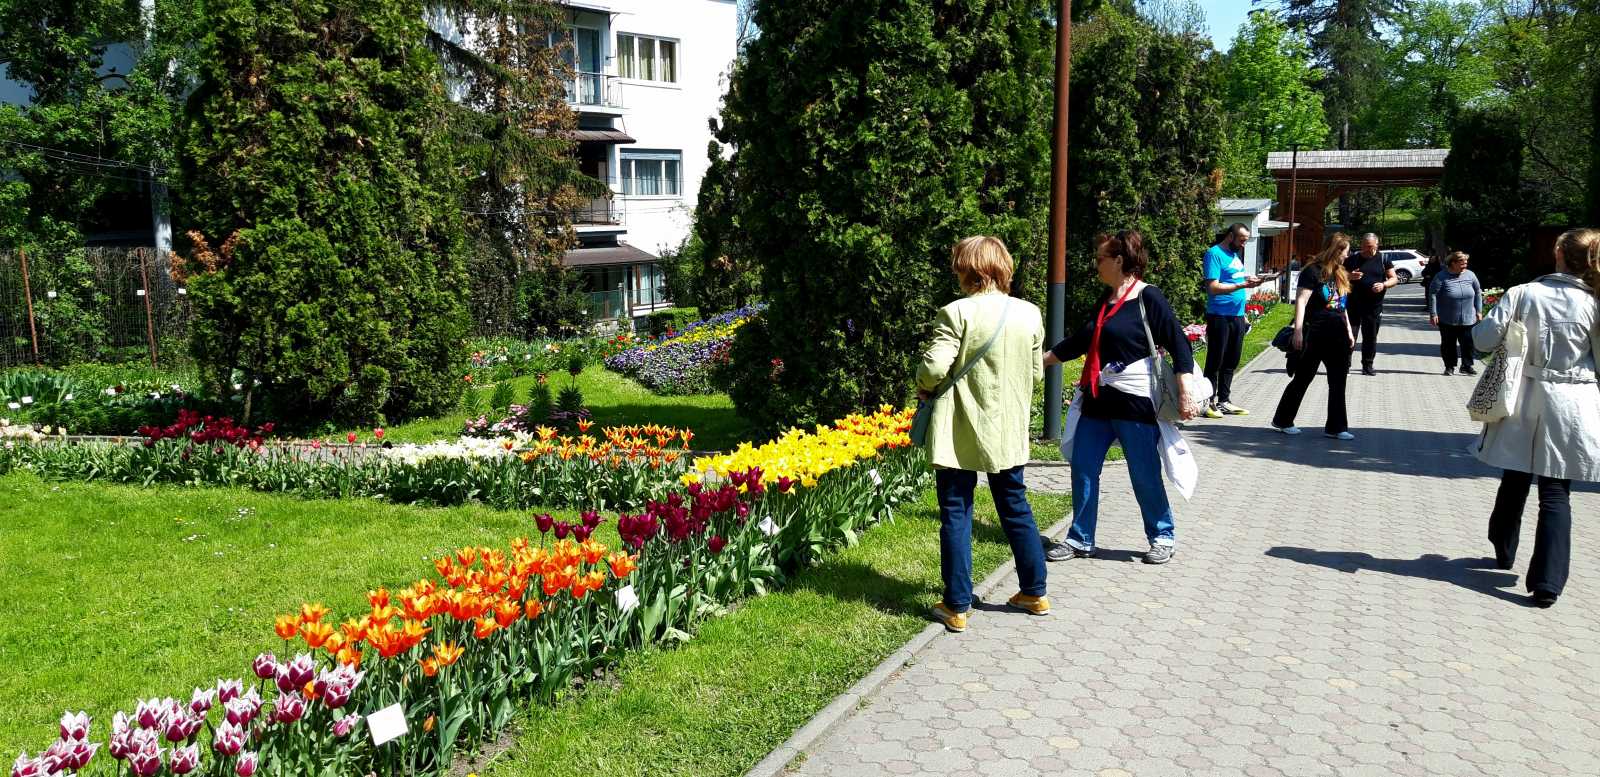 Ennek ellenére nemcsak a fiatalabbak, hanem az idősebbek is szép számmal érkeztek az Alexandru Borza nevét viselő botanikus kertbe, amit 1922–23 között költöztették át eredeti helyéről, a Mikó-kertből a jelenlegi Majális utcába.